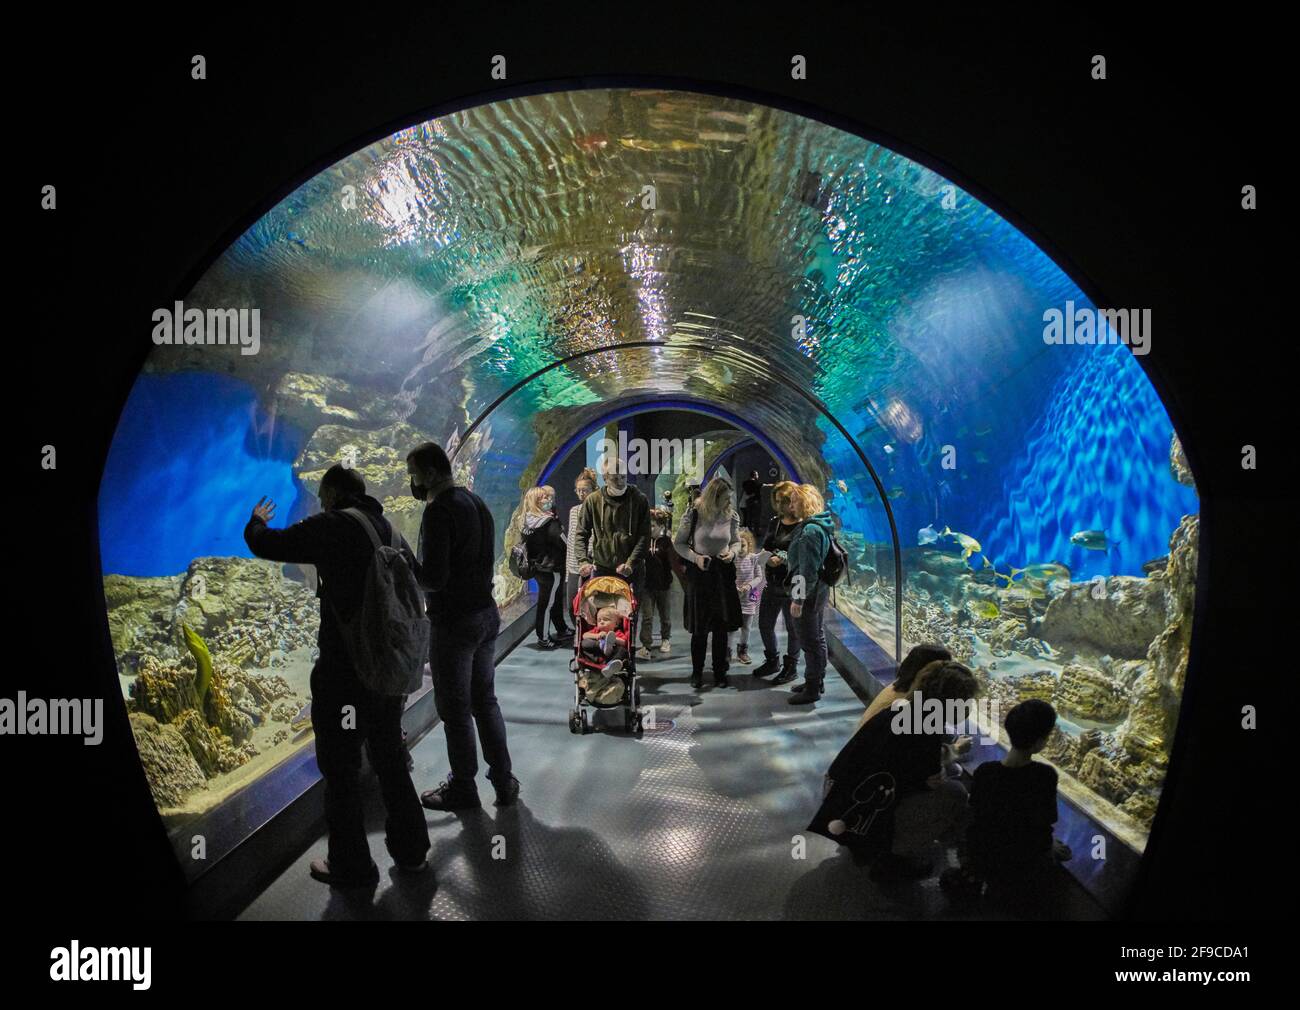 People walk through an aquarium tunnel in Moskvarium, the largest oceanarium in Moscow, Russia. Stock Photo